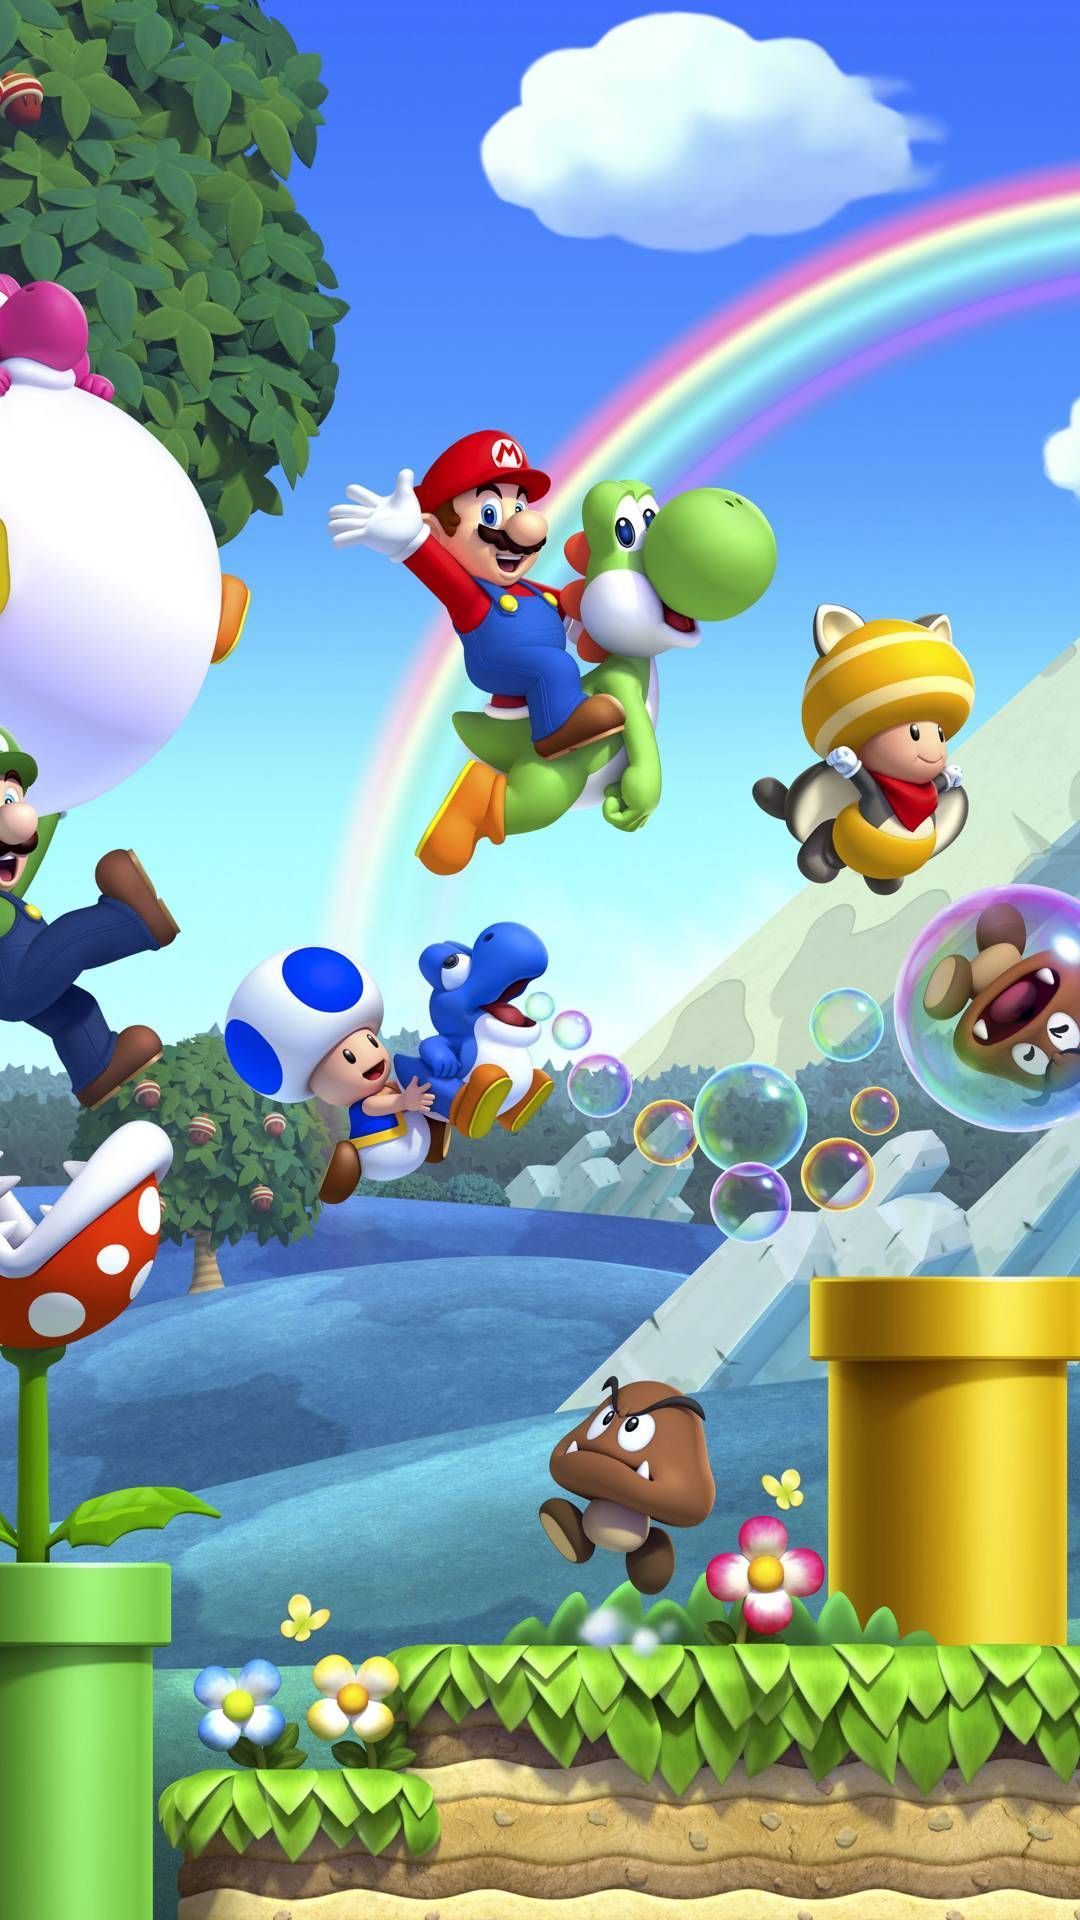 Mario Bros Game Mobile HD Wallpaper. Mario art, para iphone, Imagens do mario